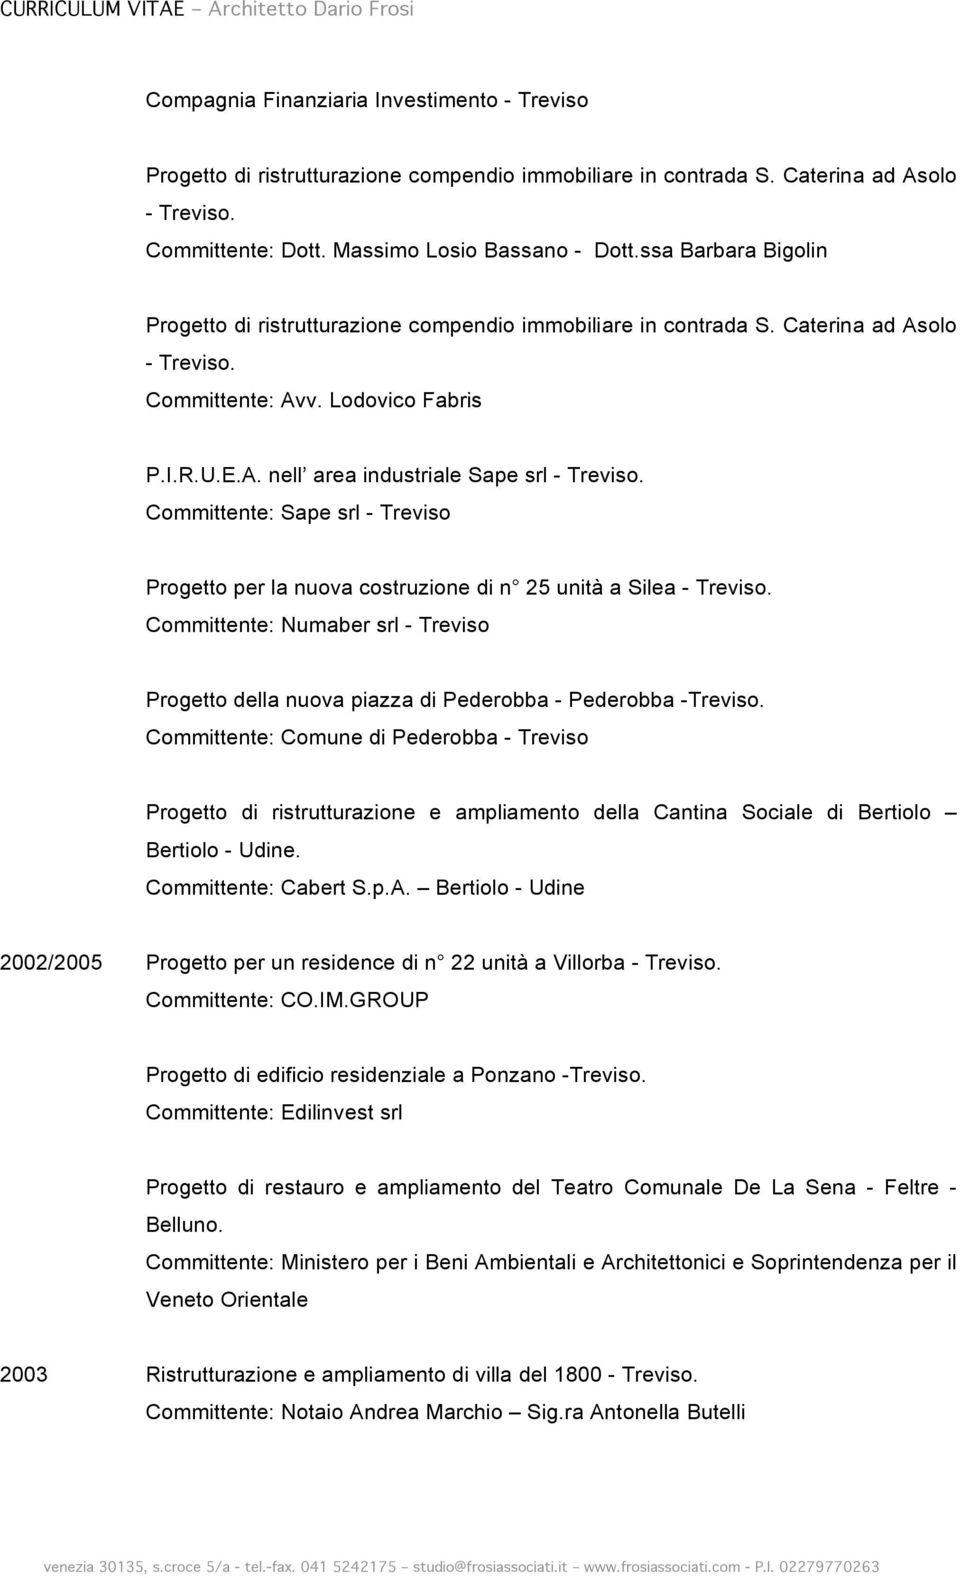 Committente: Sape srl - Treviso Progetto per la nuova costruzione di n 25 unità a Silea - Treviso. Committente: Numaber srl - Treviso Progetto della nuova piazza di Pederobba - Pederobba -Treviso.